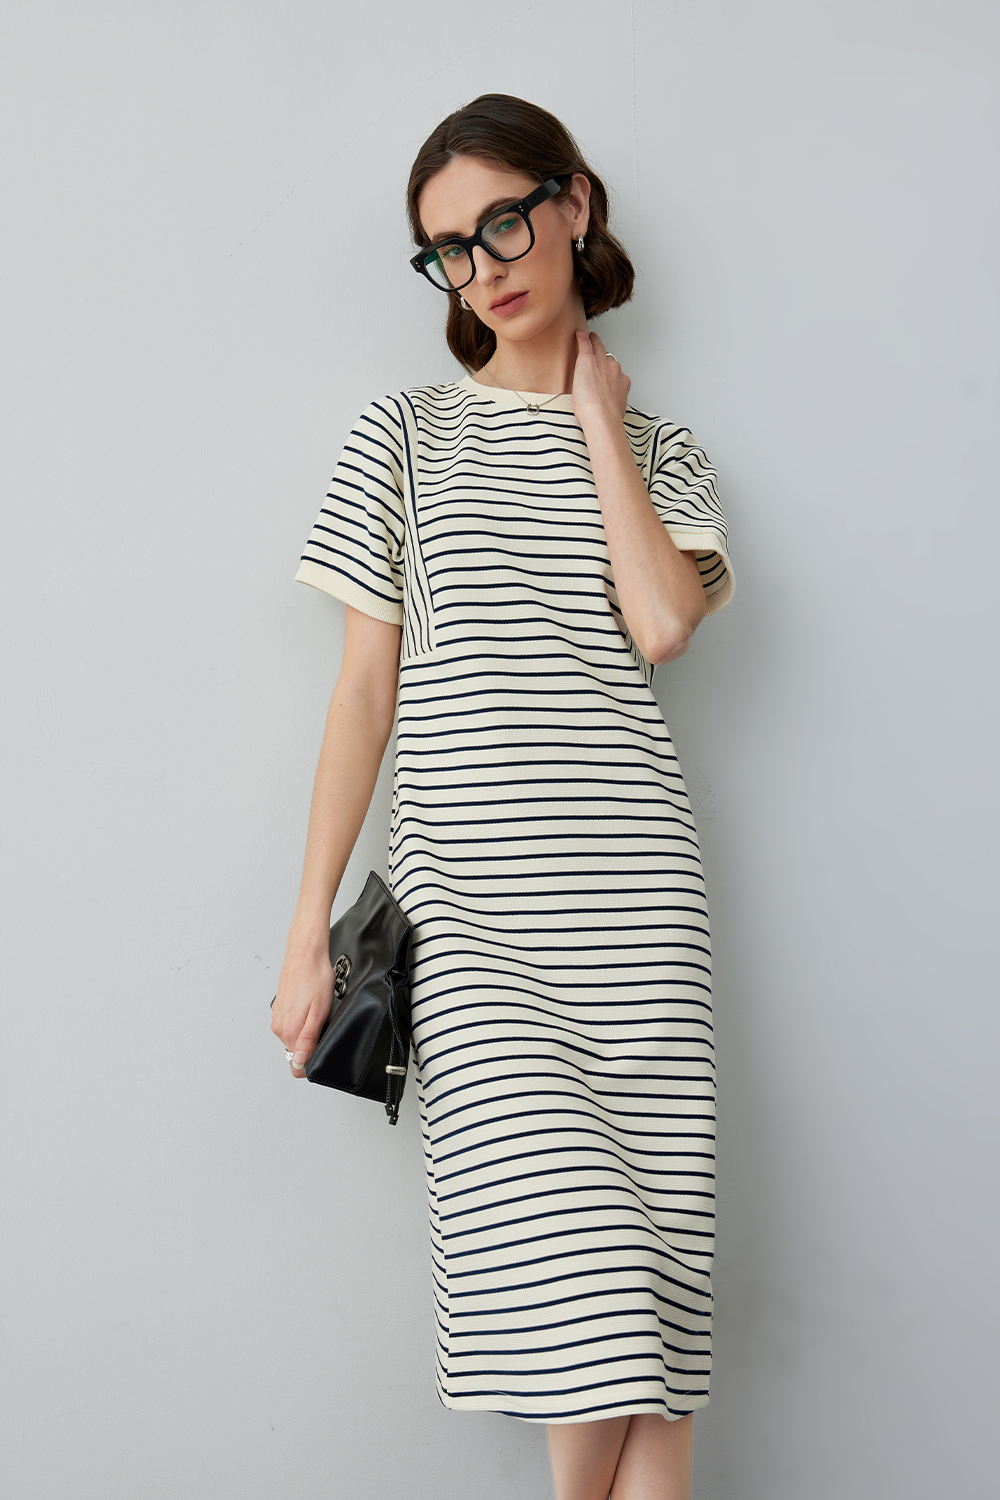 Commuter Striped Short Sleeve Dress